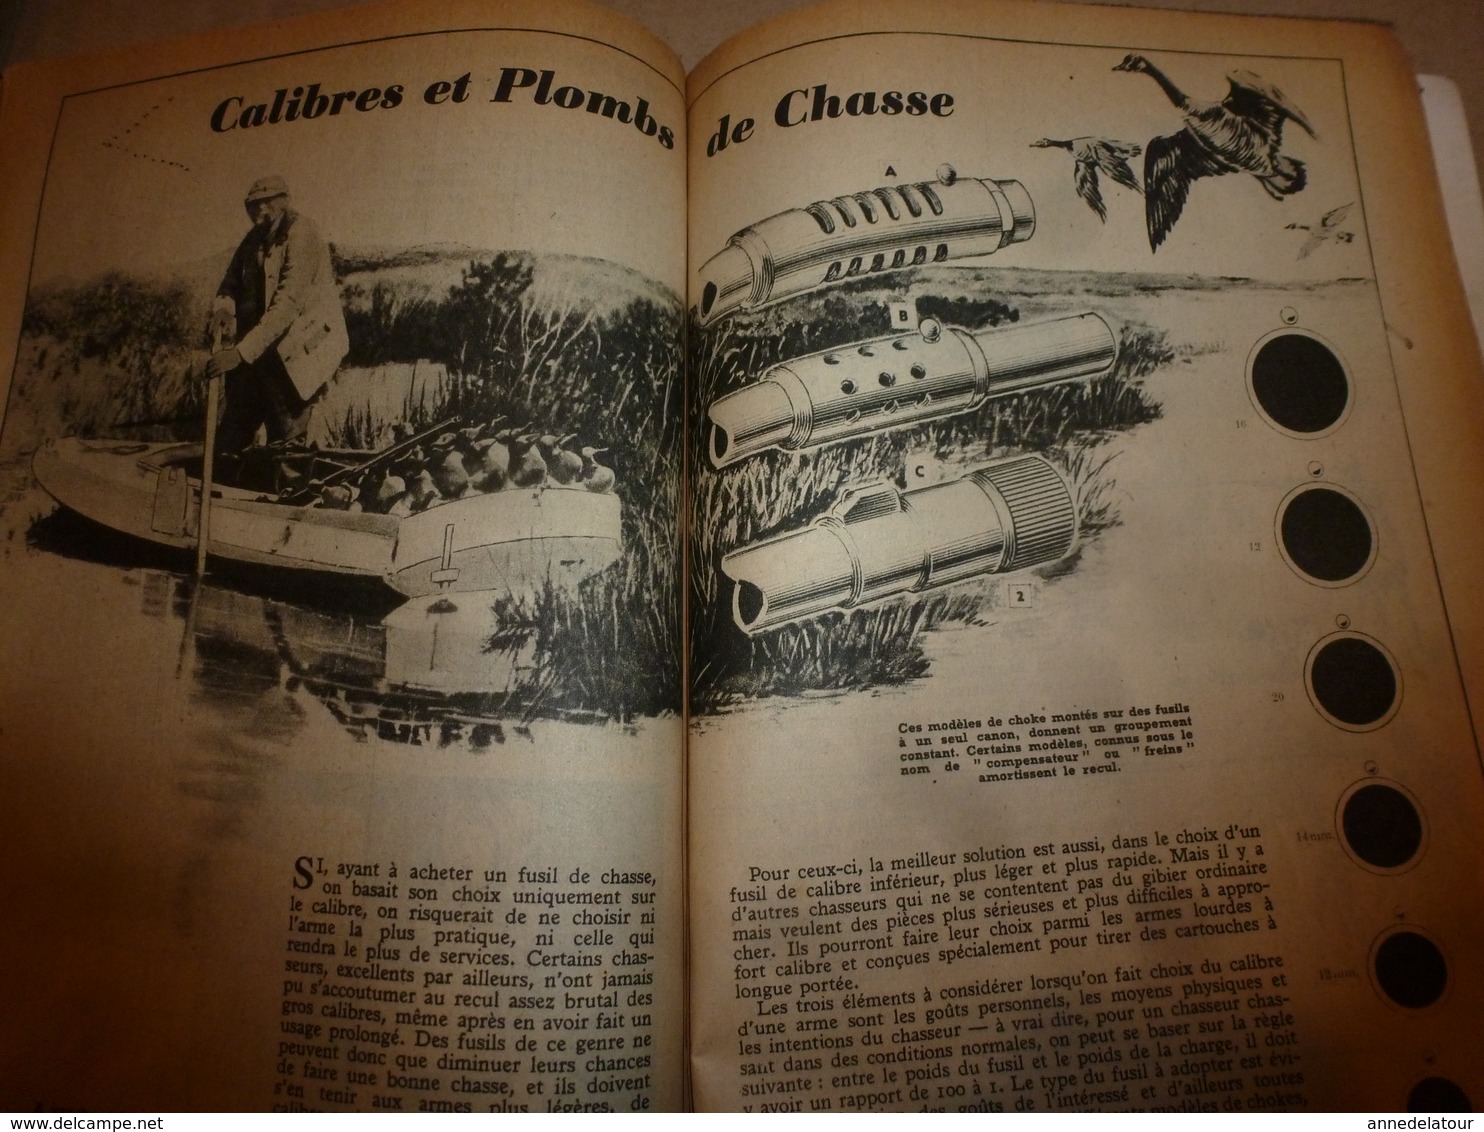 1947 MÉCANIQUE POPULAIRE :Être magicien;Le charronnage;Calibre et plombs de chasse;Conseils-achat-moto-ocassion;etc